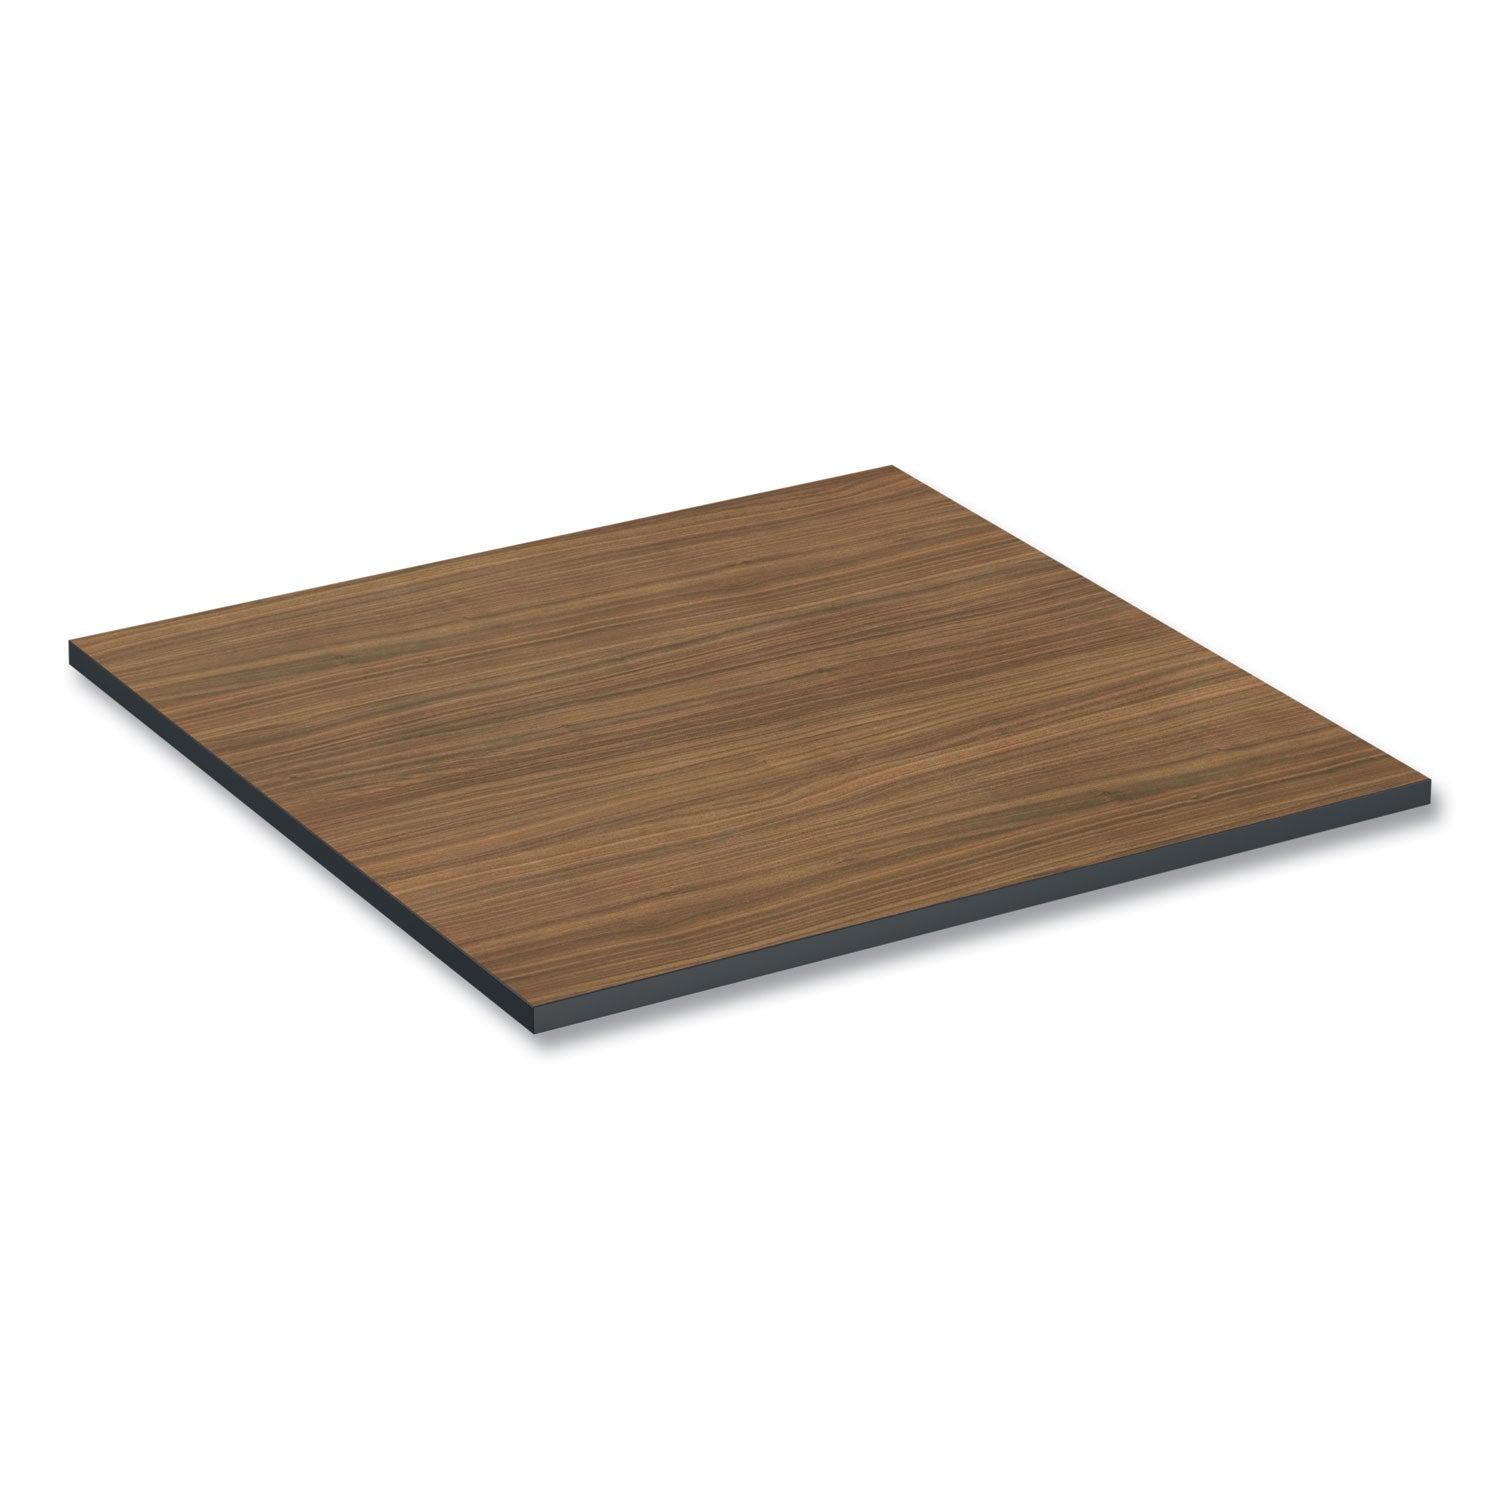 reversible-laminate-table-top-square-3538w-x-3538d-espresso-walnut_alettsq36ew - 6